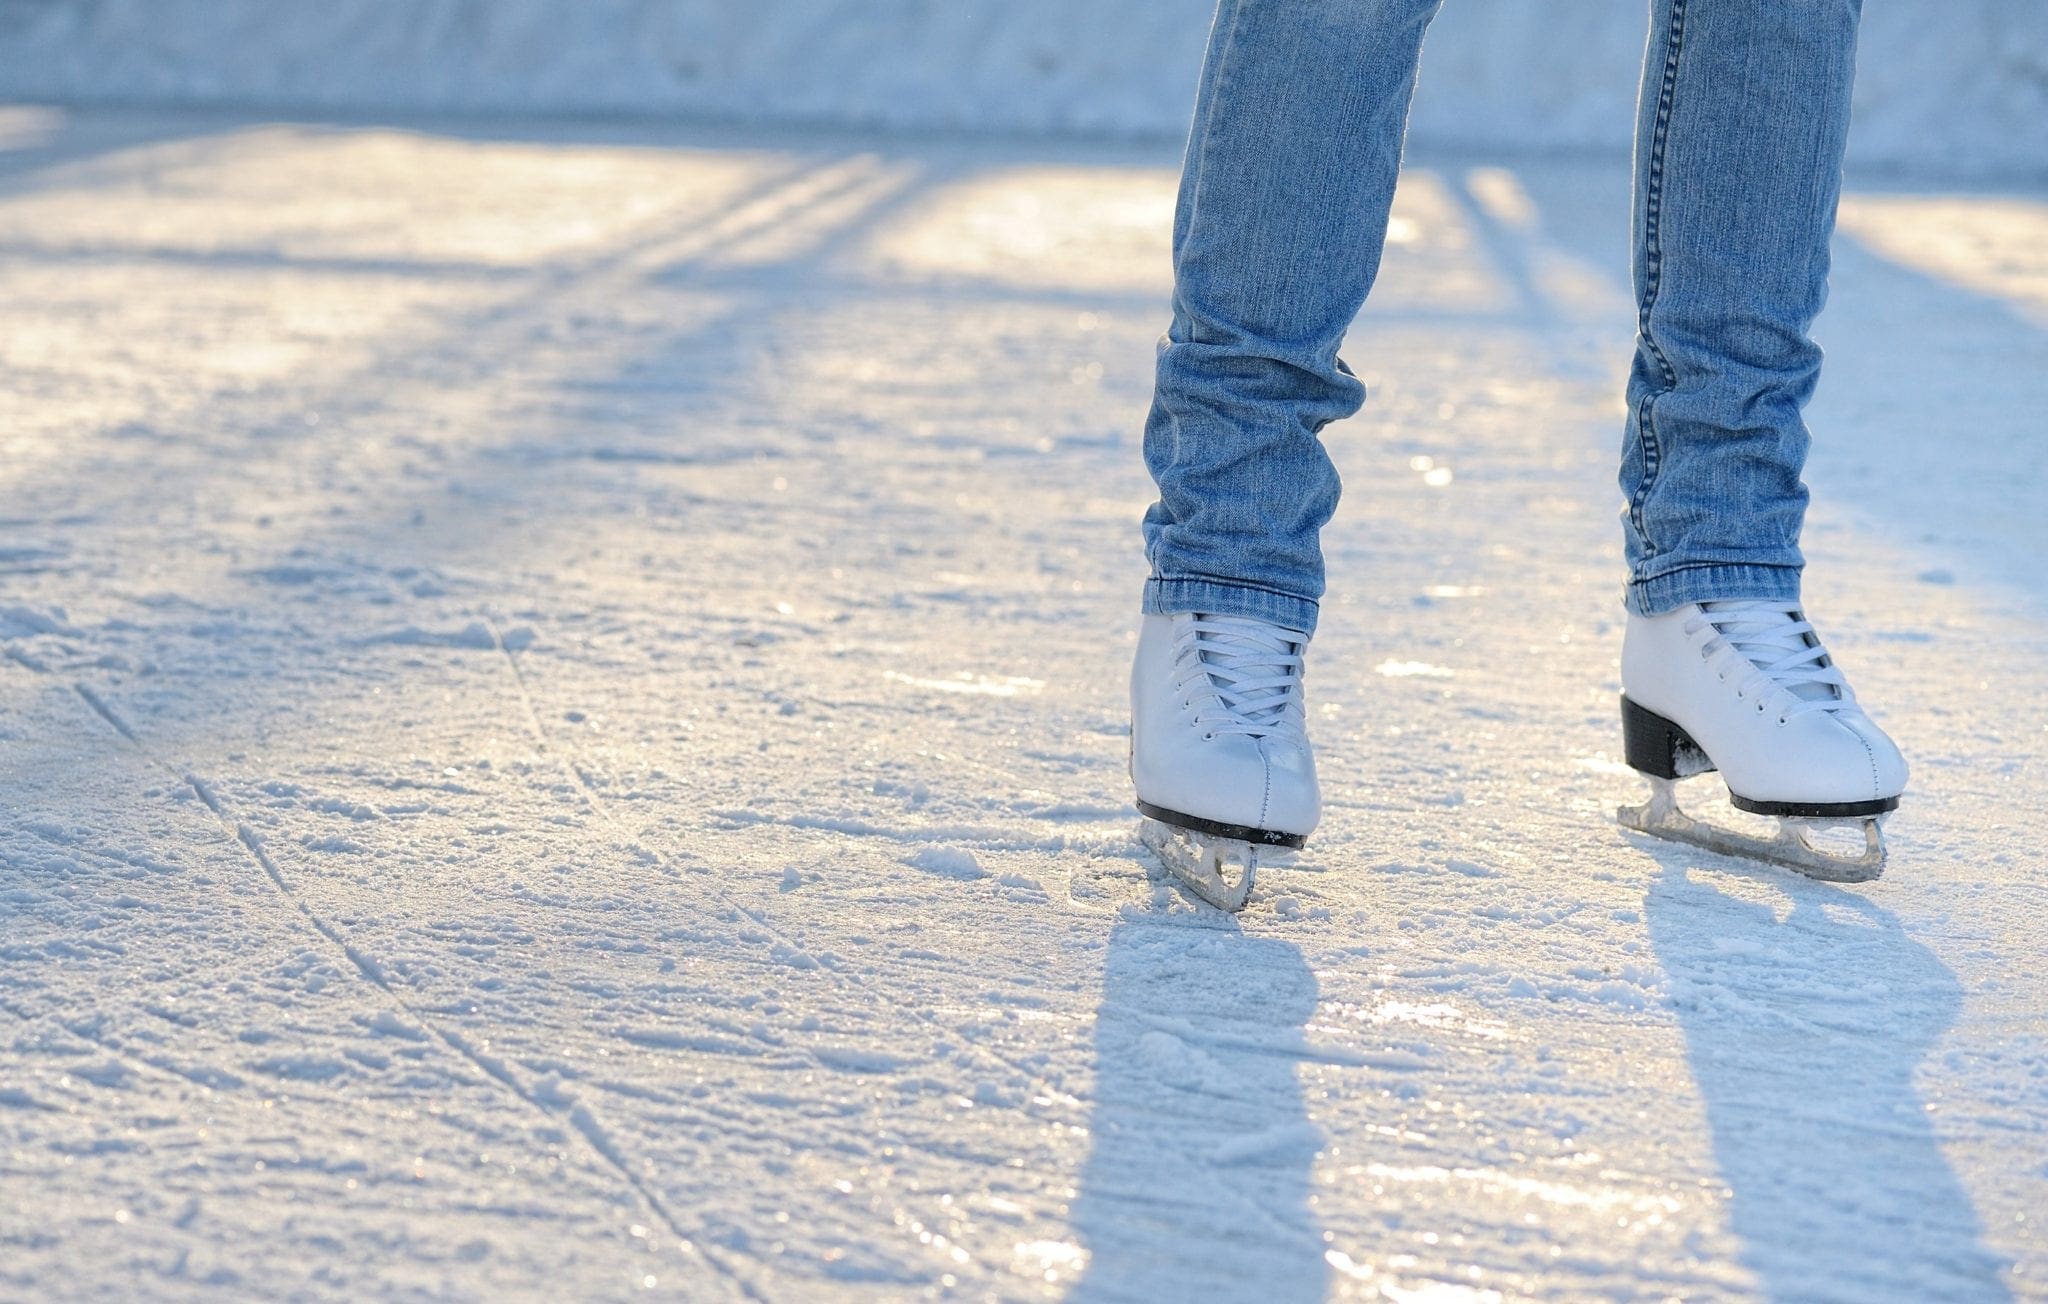 ice skating foot injury